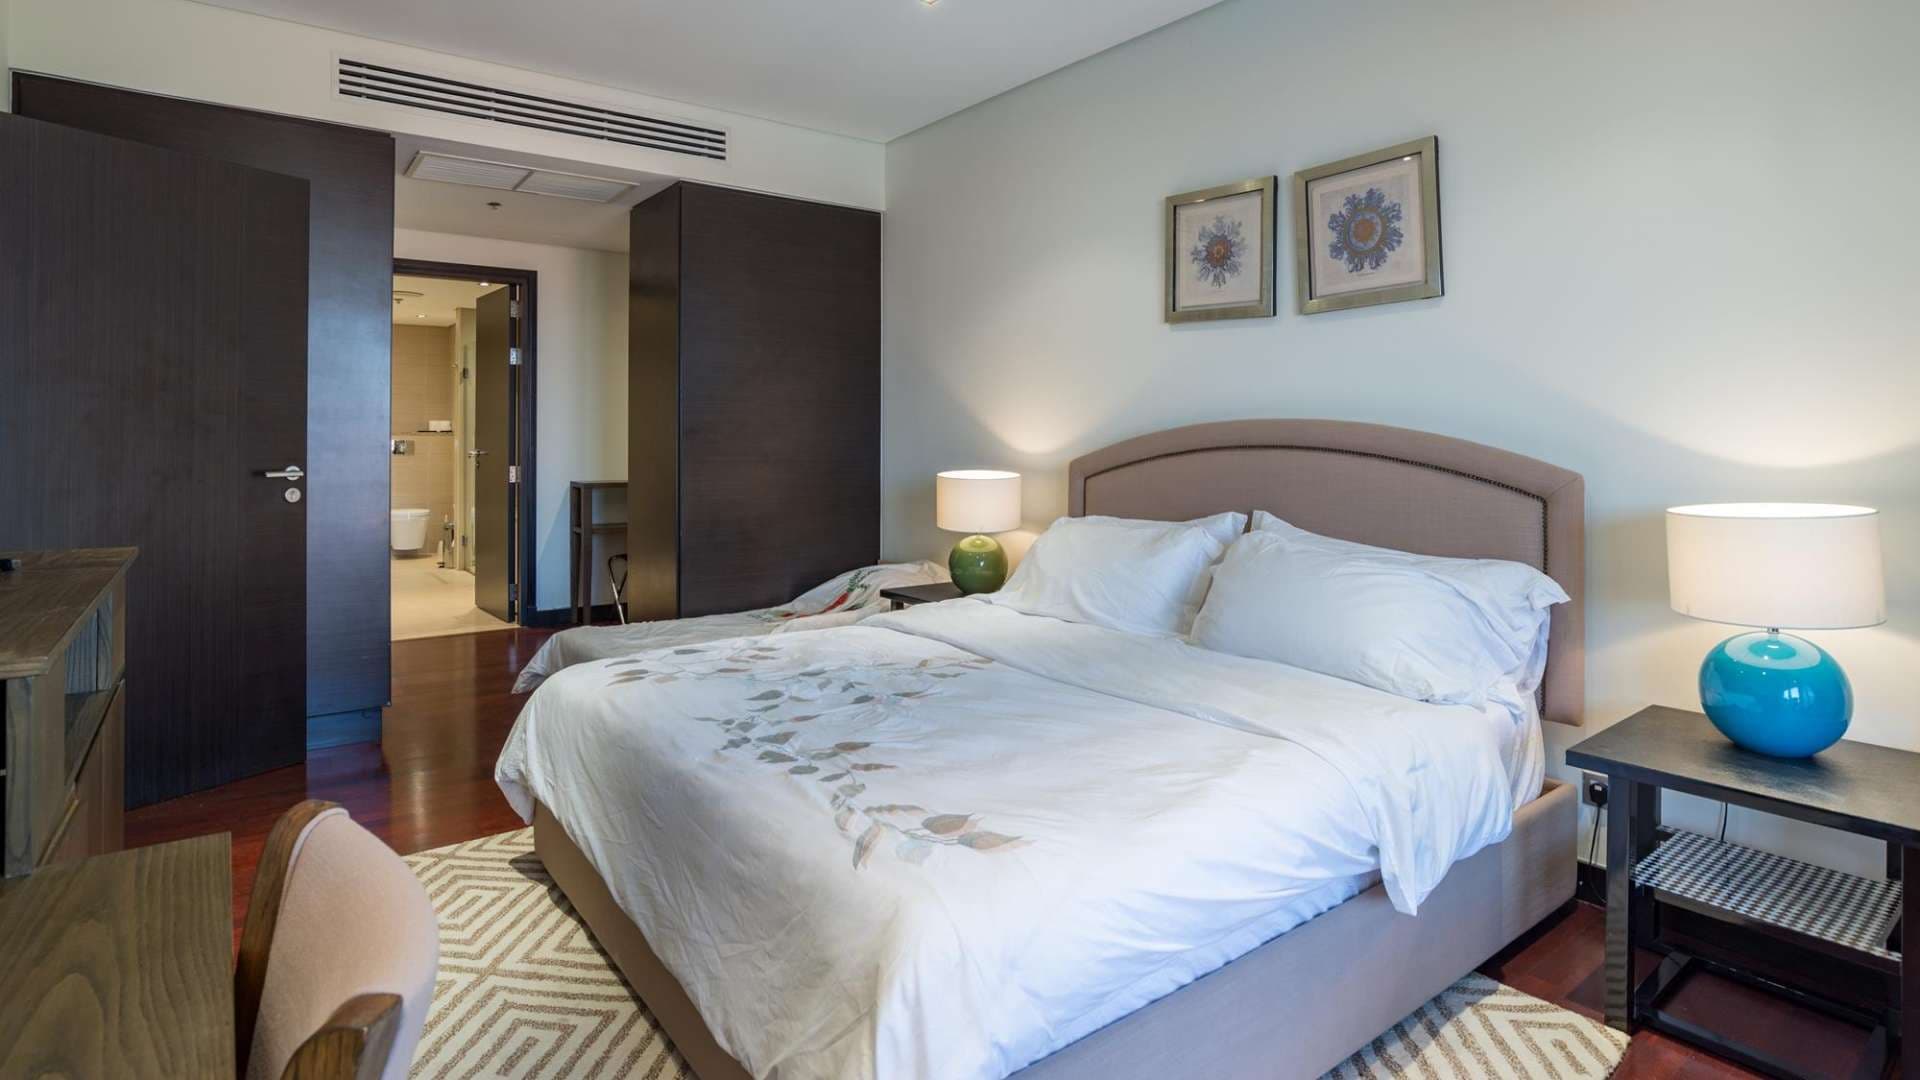 1 Bedroom Apartment For Rent Anantara Residences Lp06748 30e077615145ae0.jpg